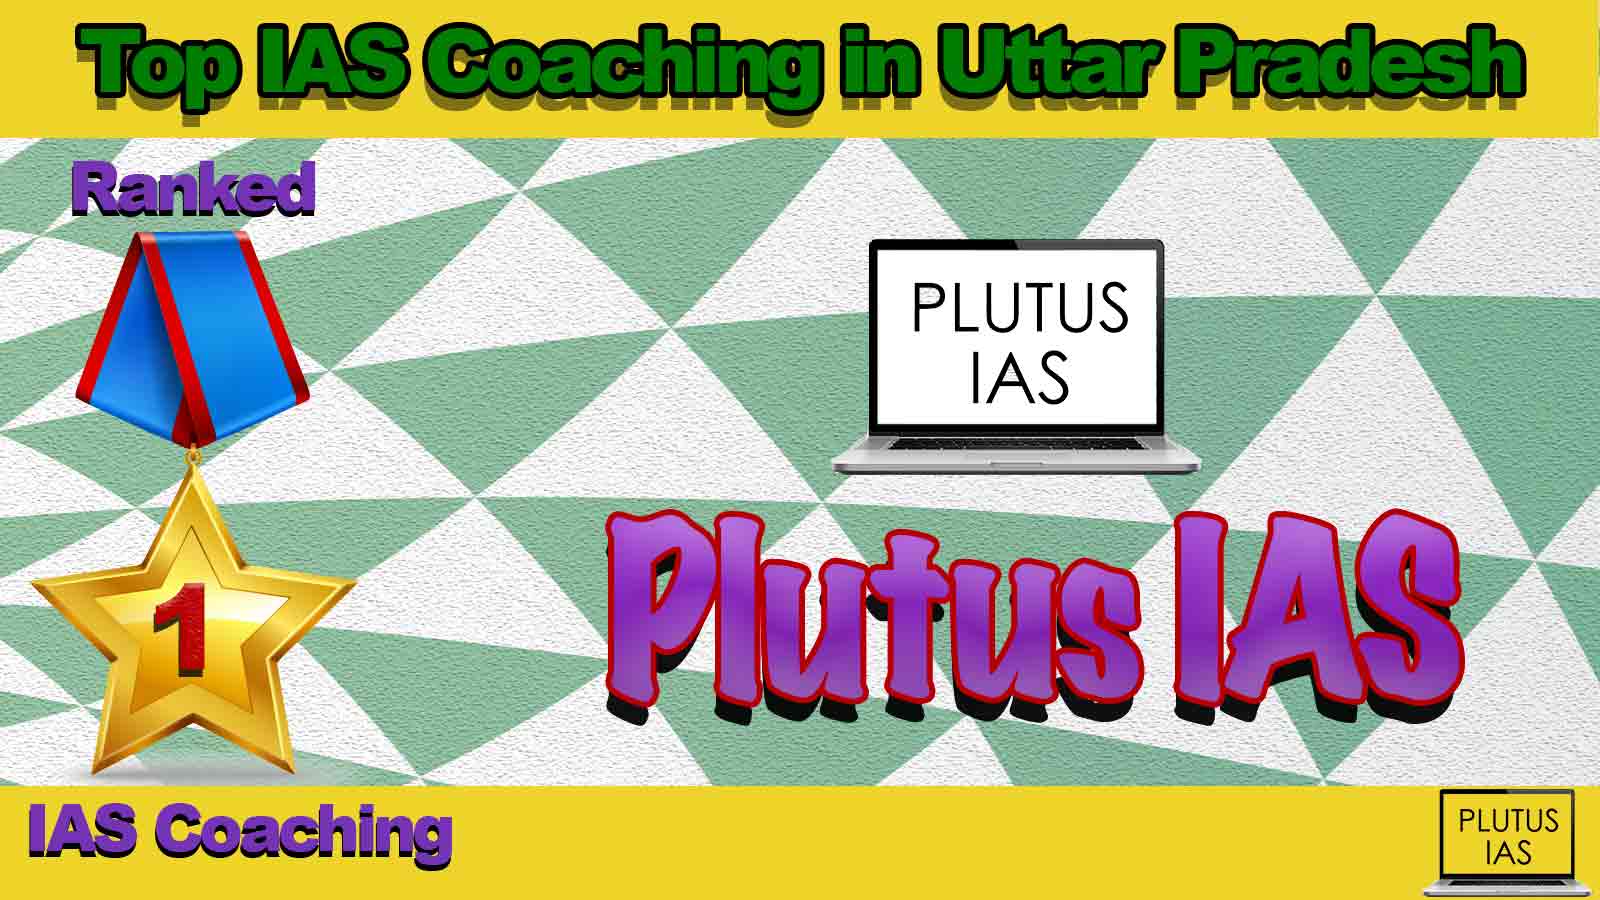 Best IAS Coaching in Uttar Pradesh